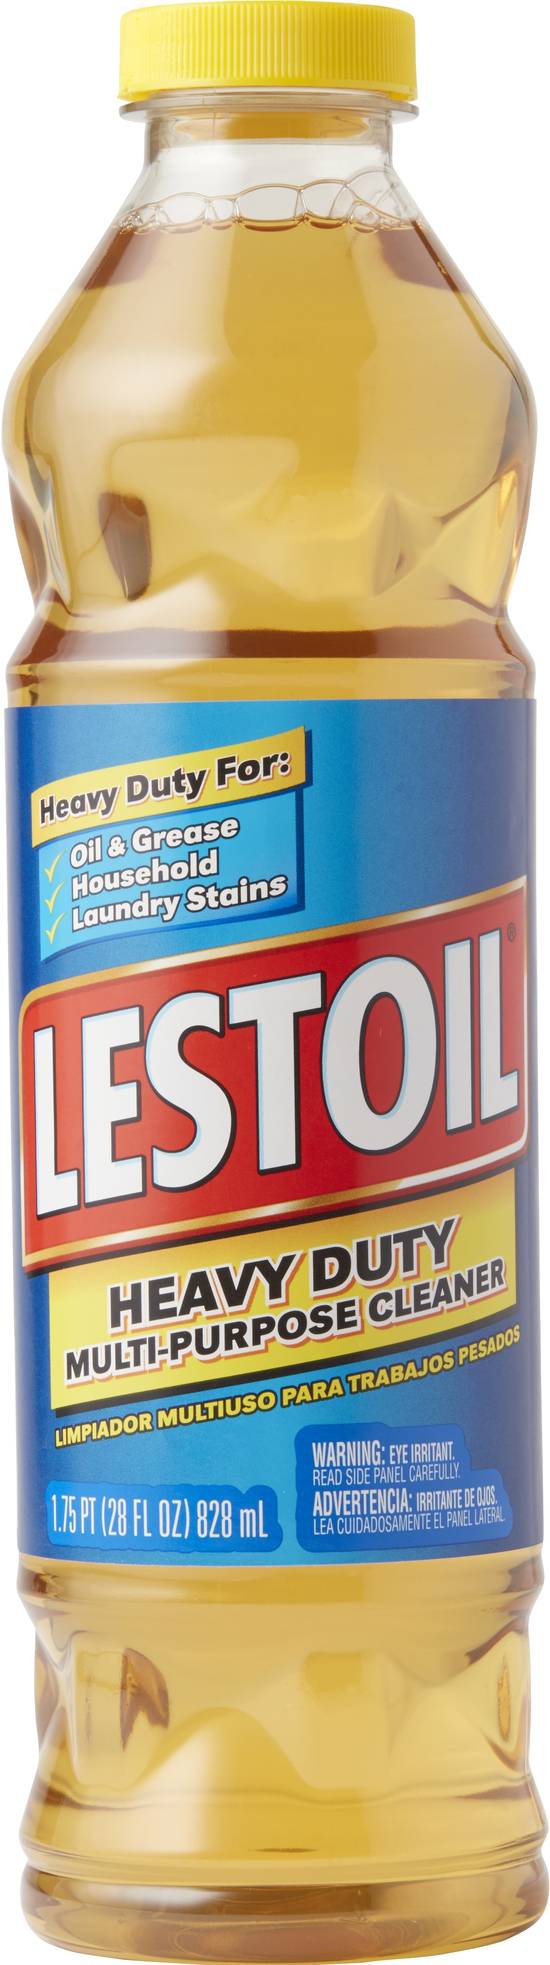 Lestoil Heavy Duty Multi-Purpose Cleaner